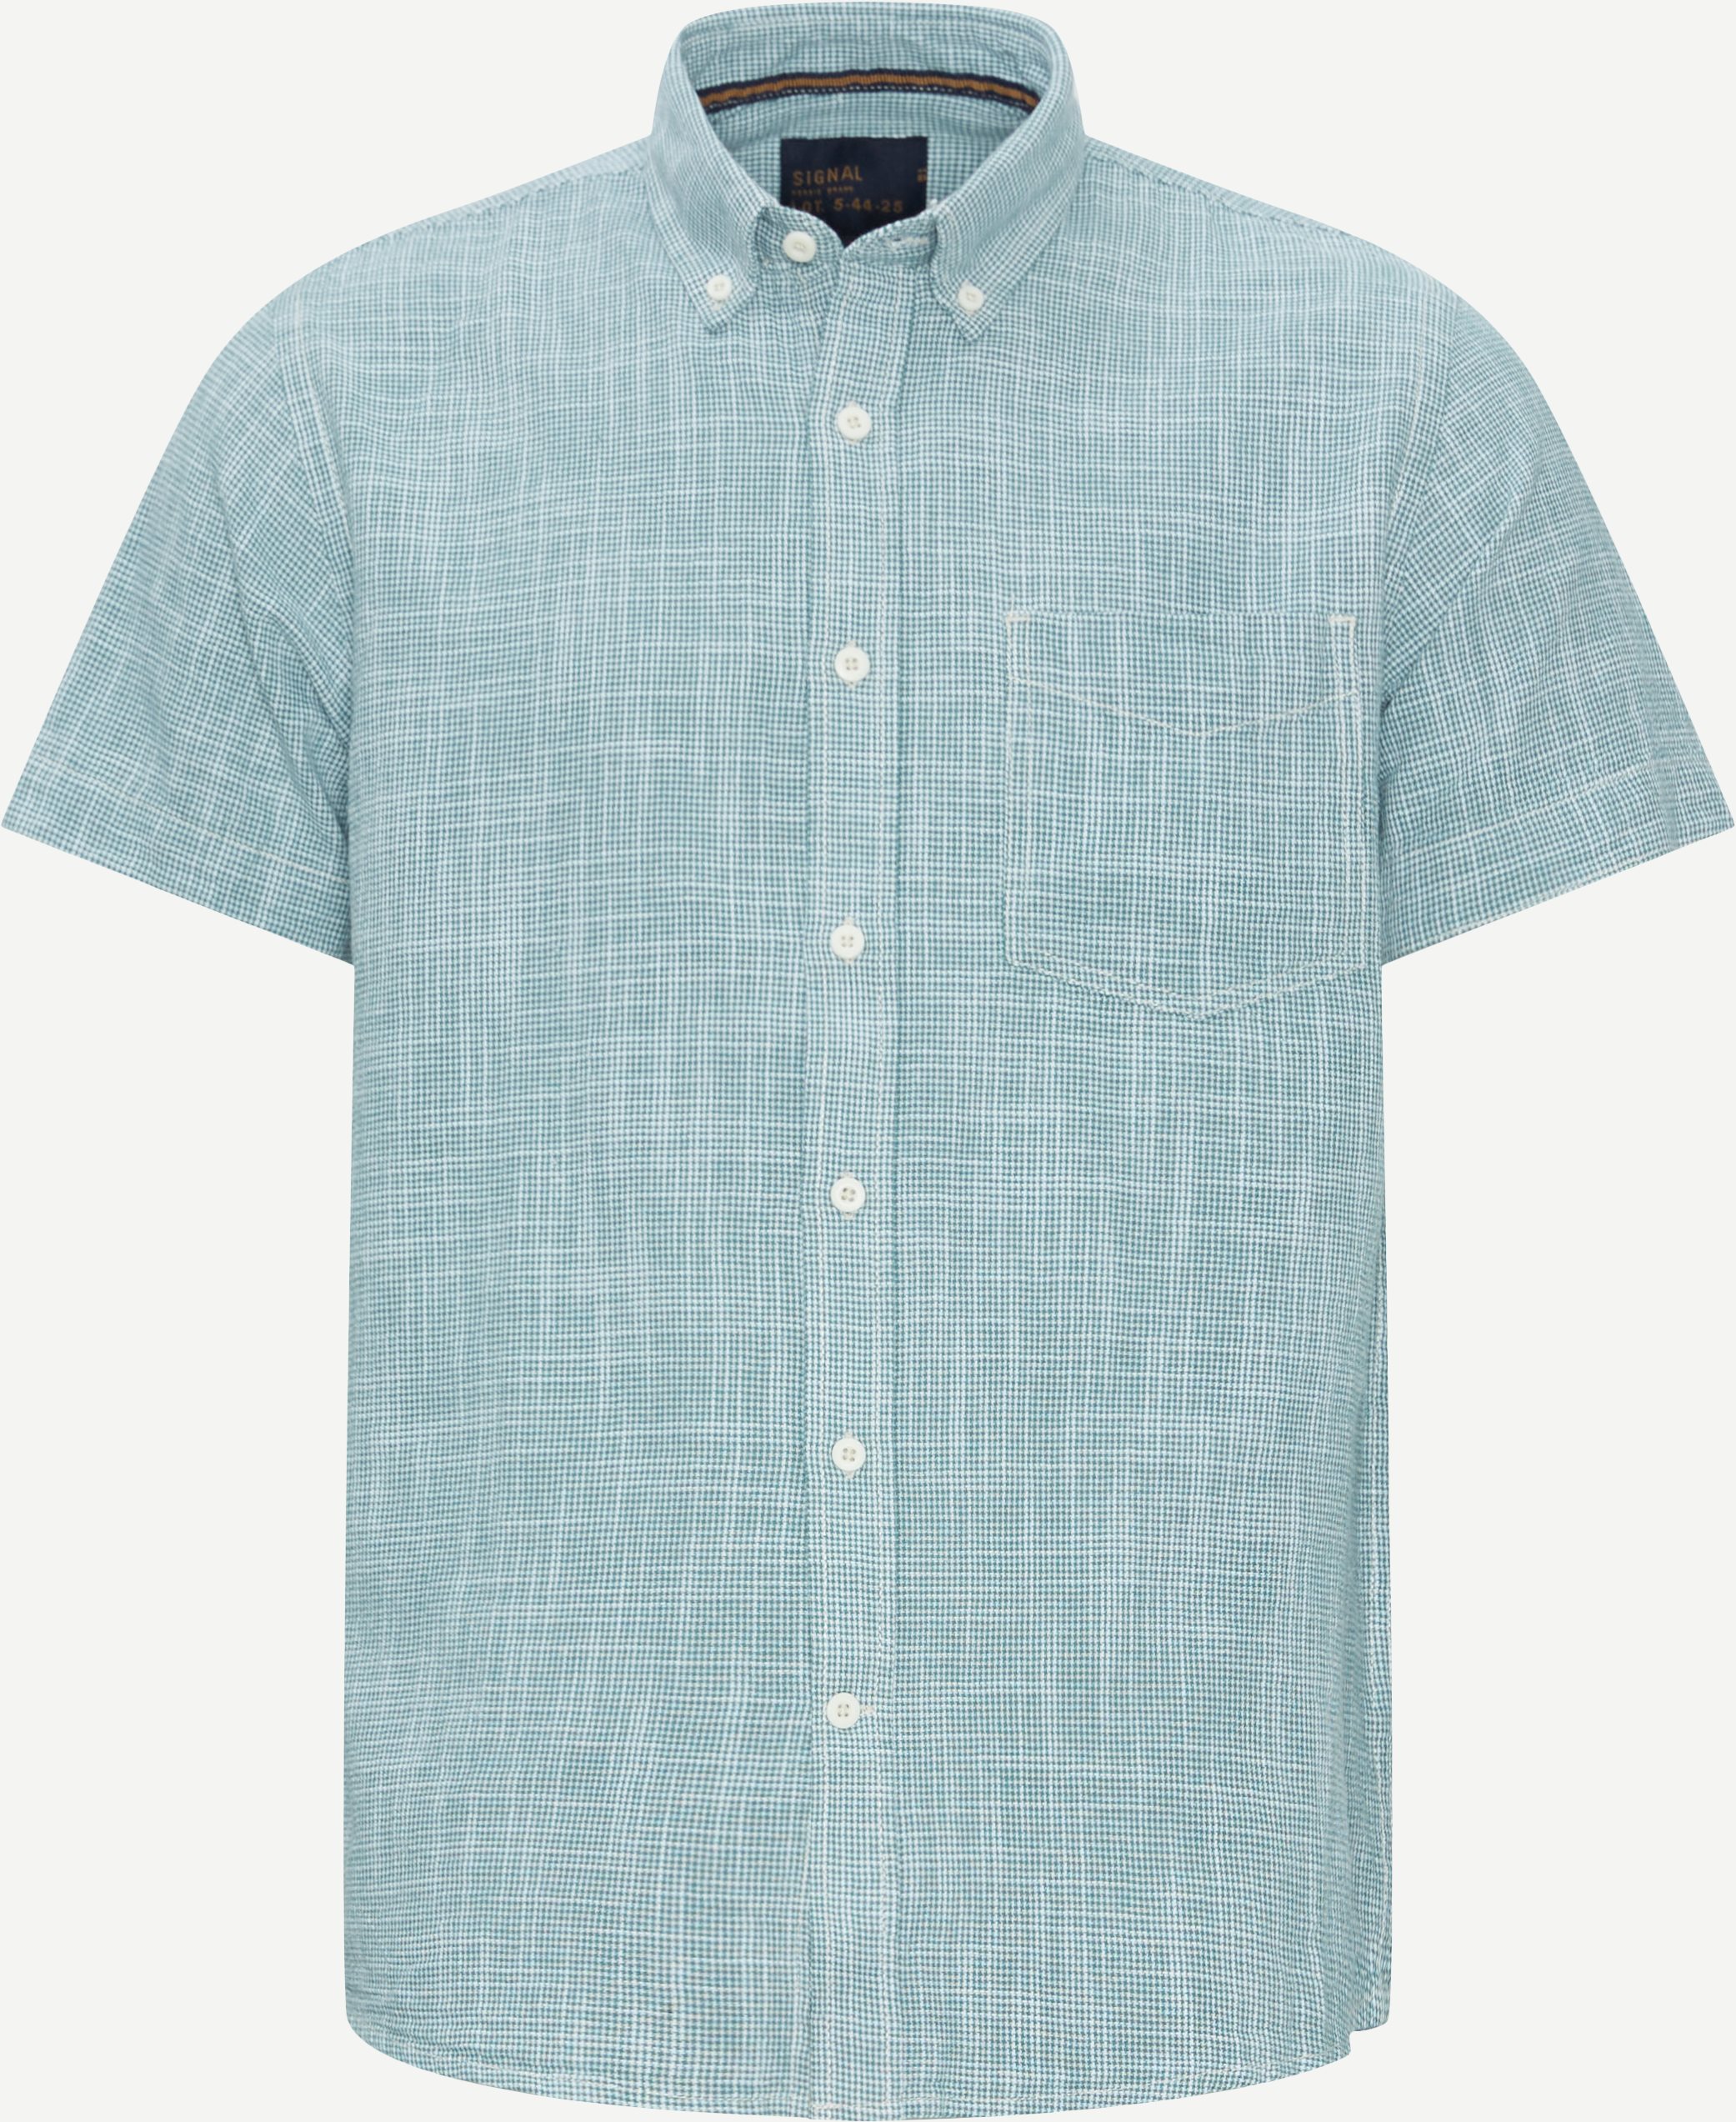 Signal Short-sleeved shirts 15567 1860 2401 Green